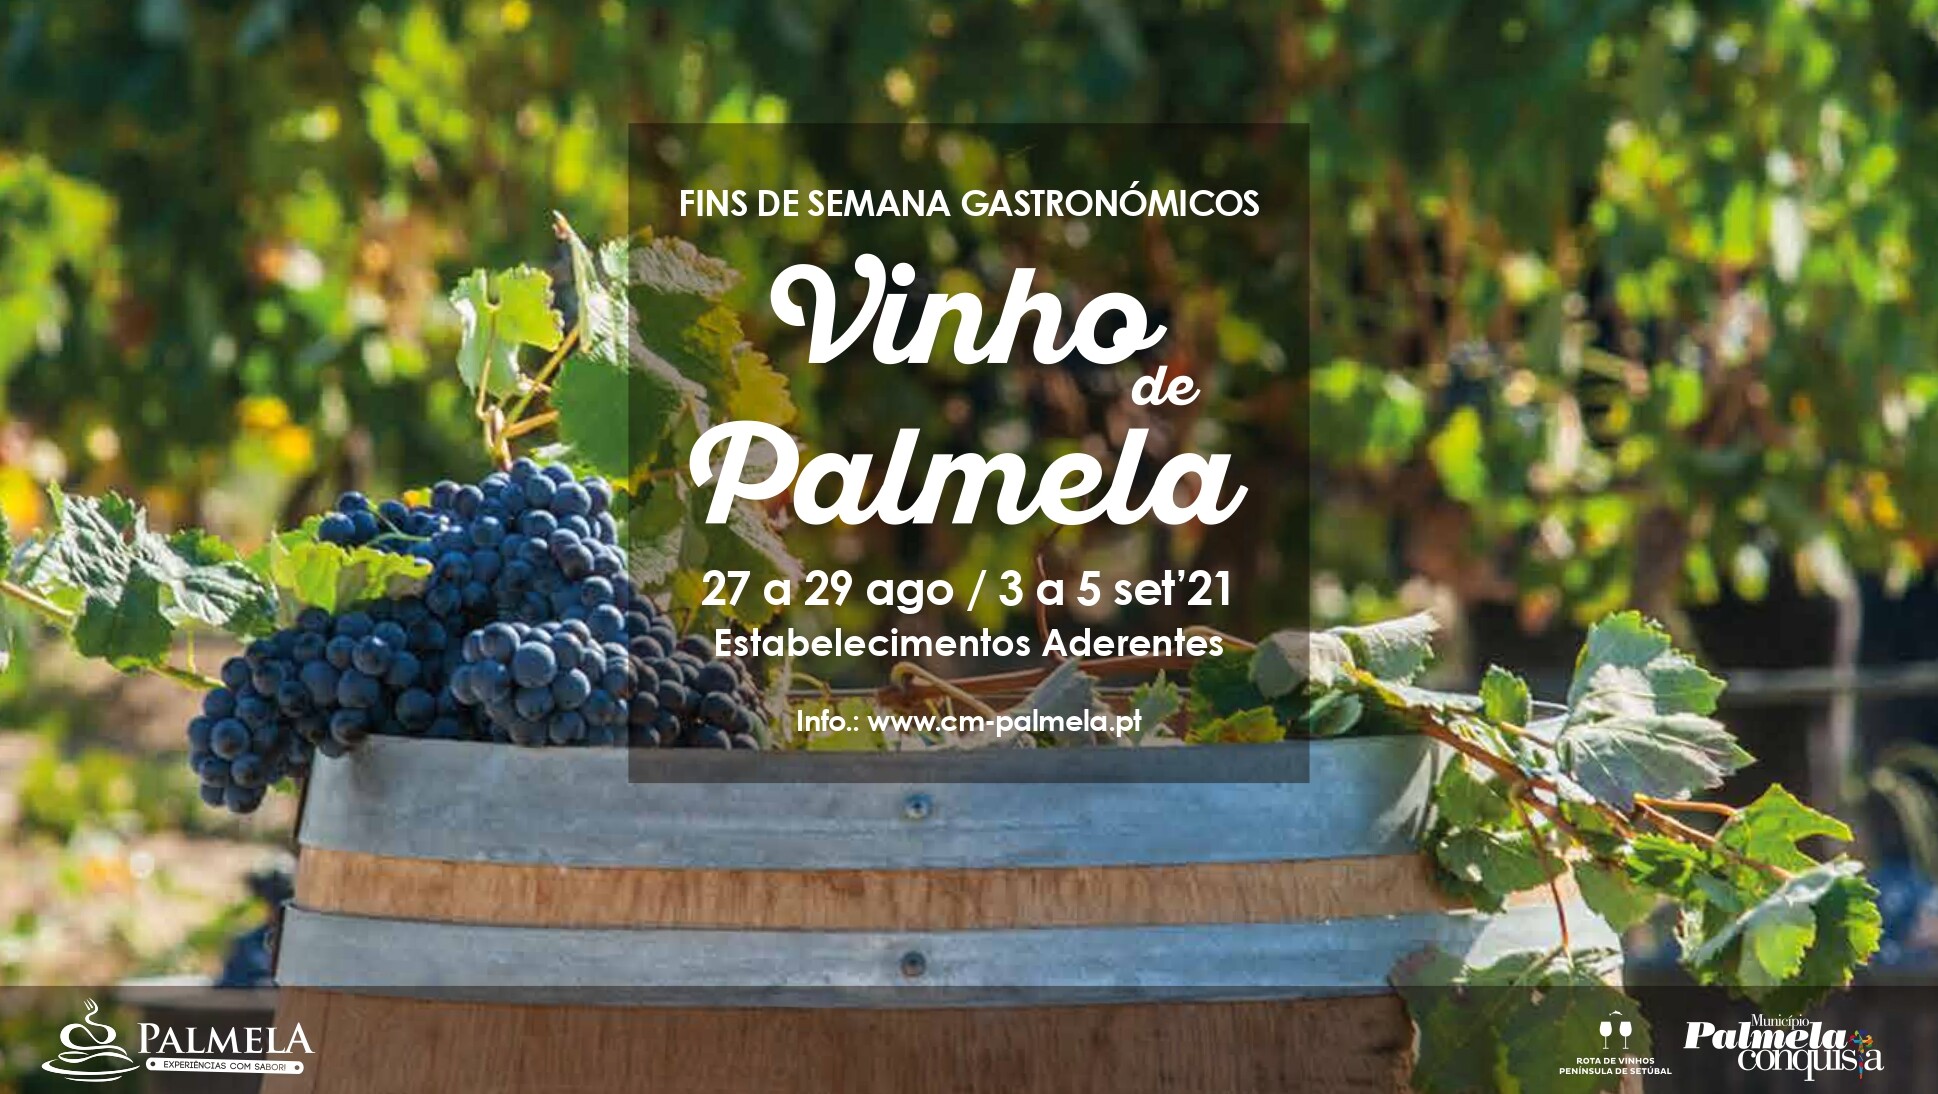 Fins de Semana Gastronómicos do Vinho de Palmela: conheça as ementas aqui